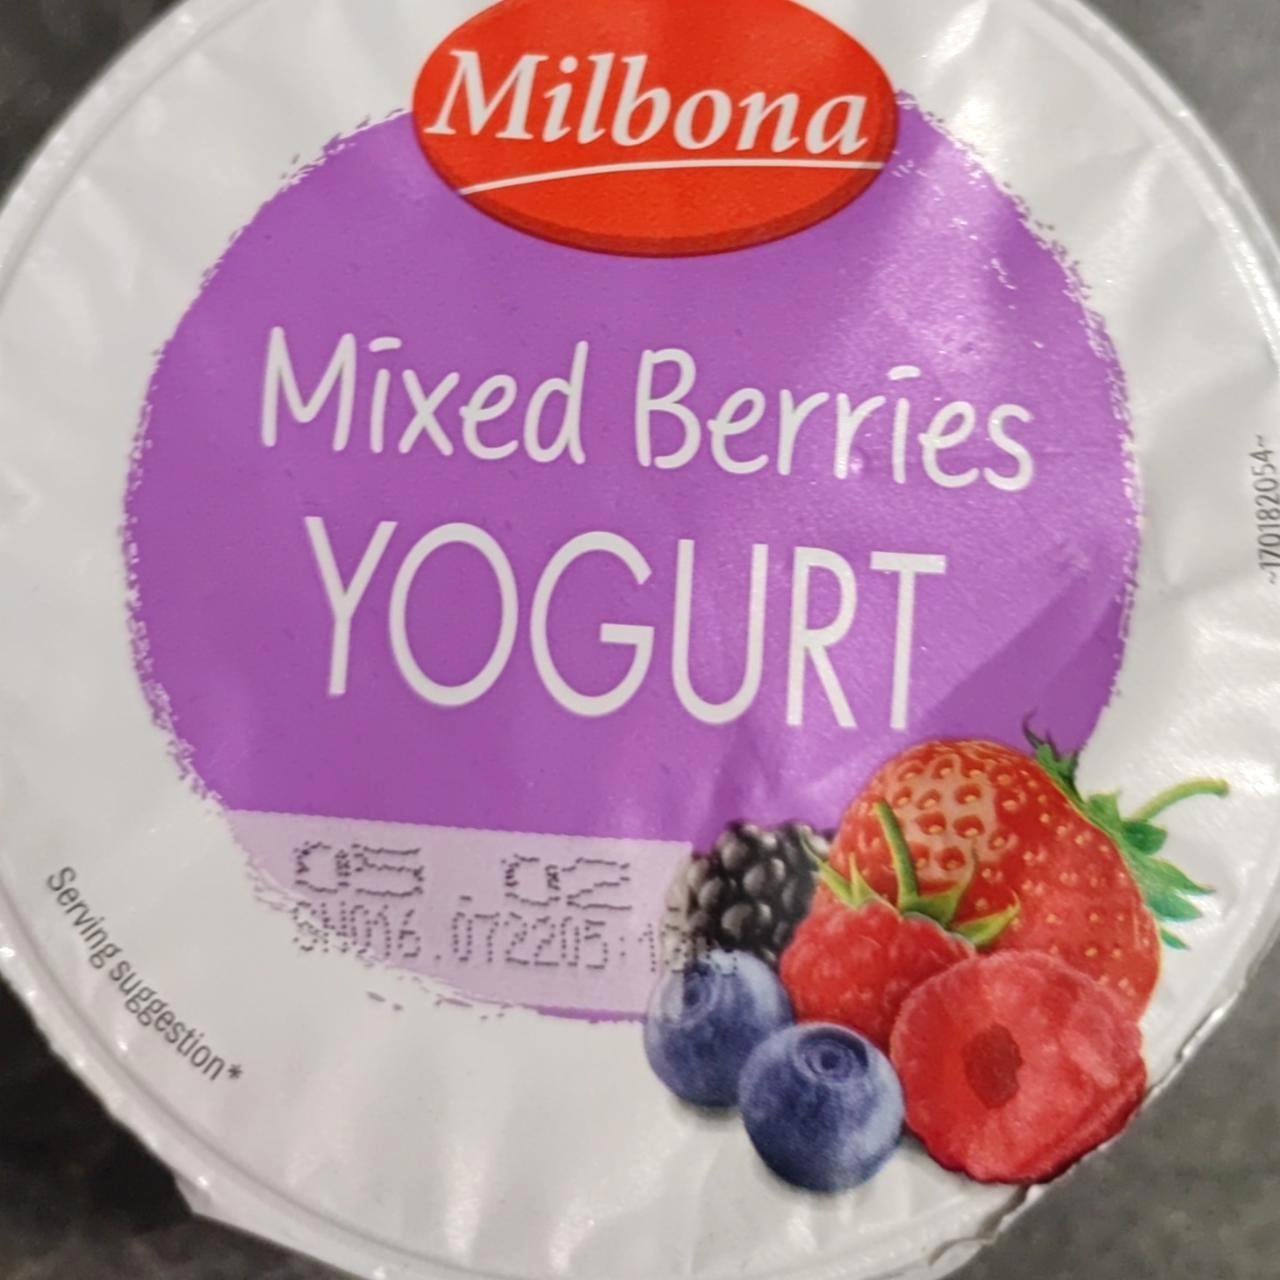 Képek - Mixed berries yogurt Milbona